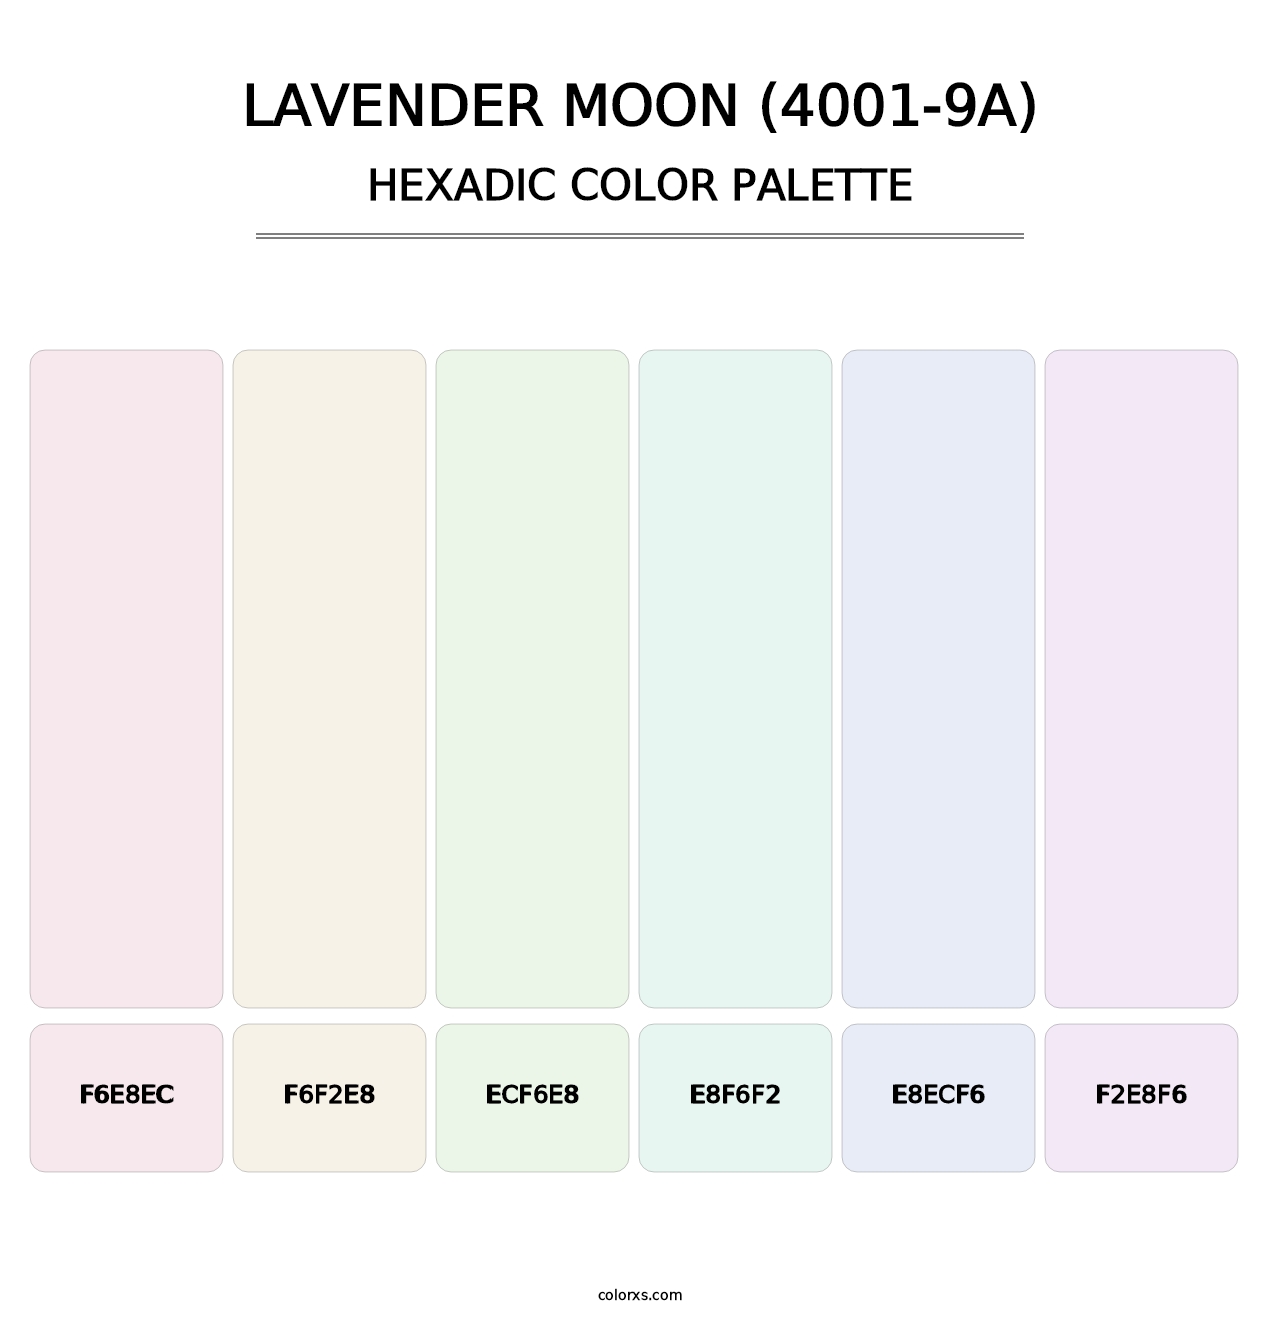 Lavender Moon (4001-9A) - Hexadic Color Palette